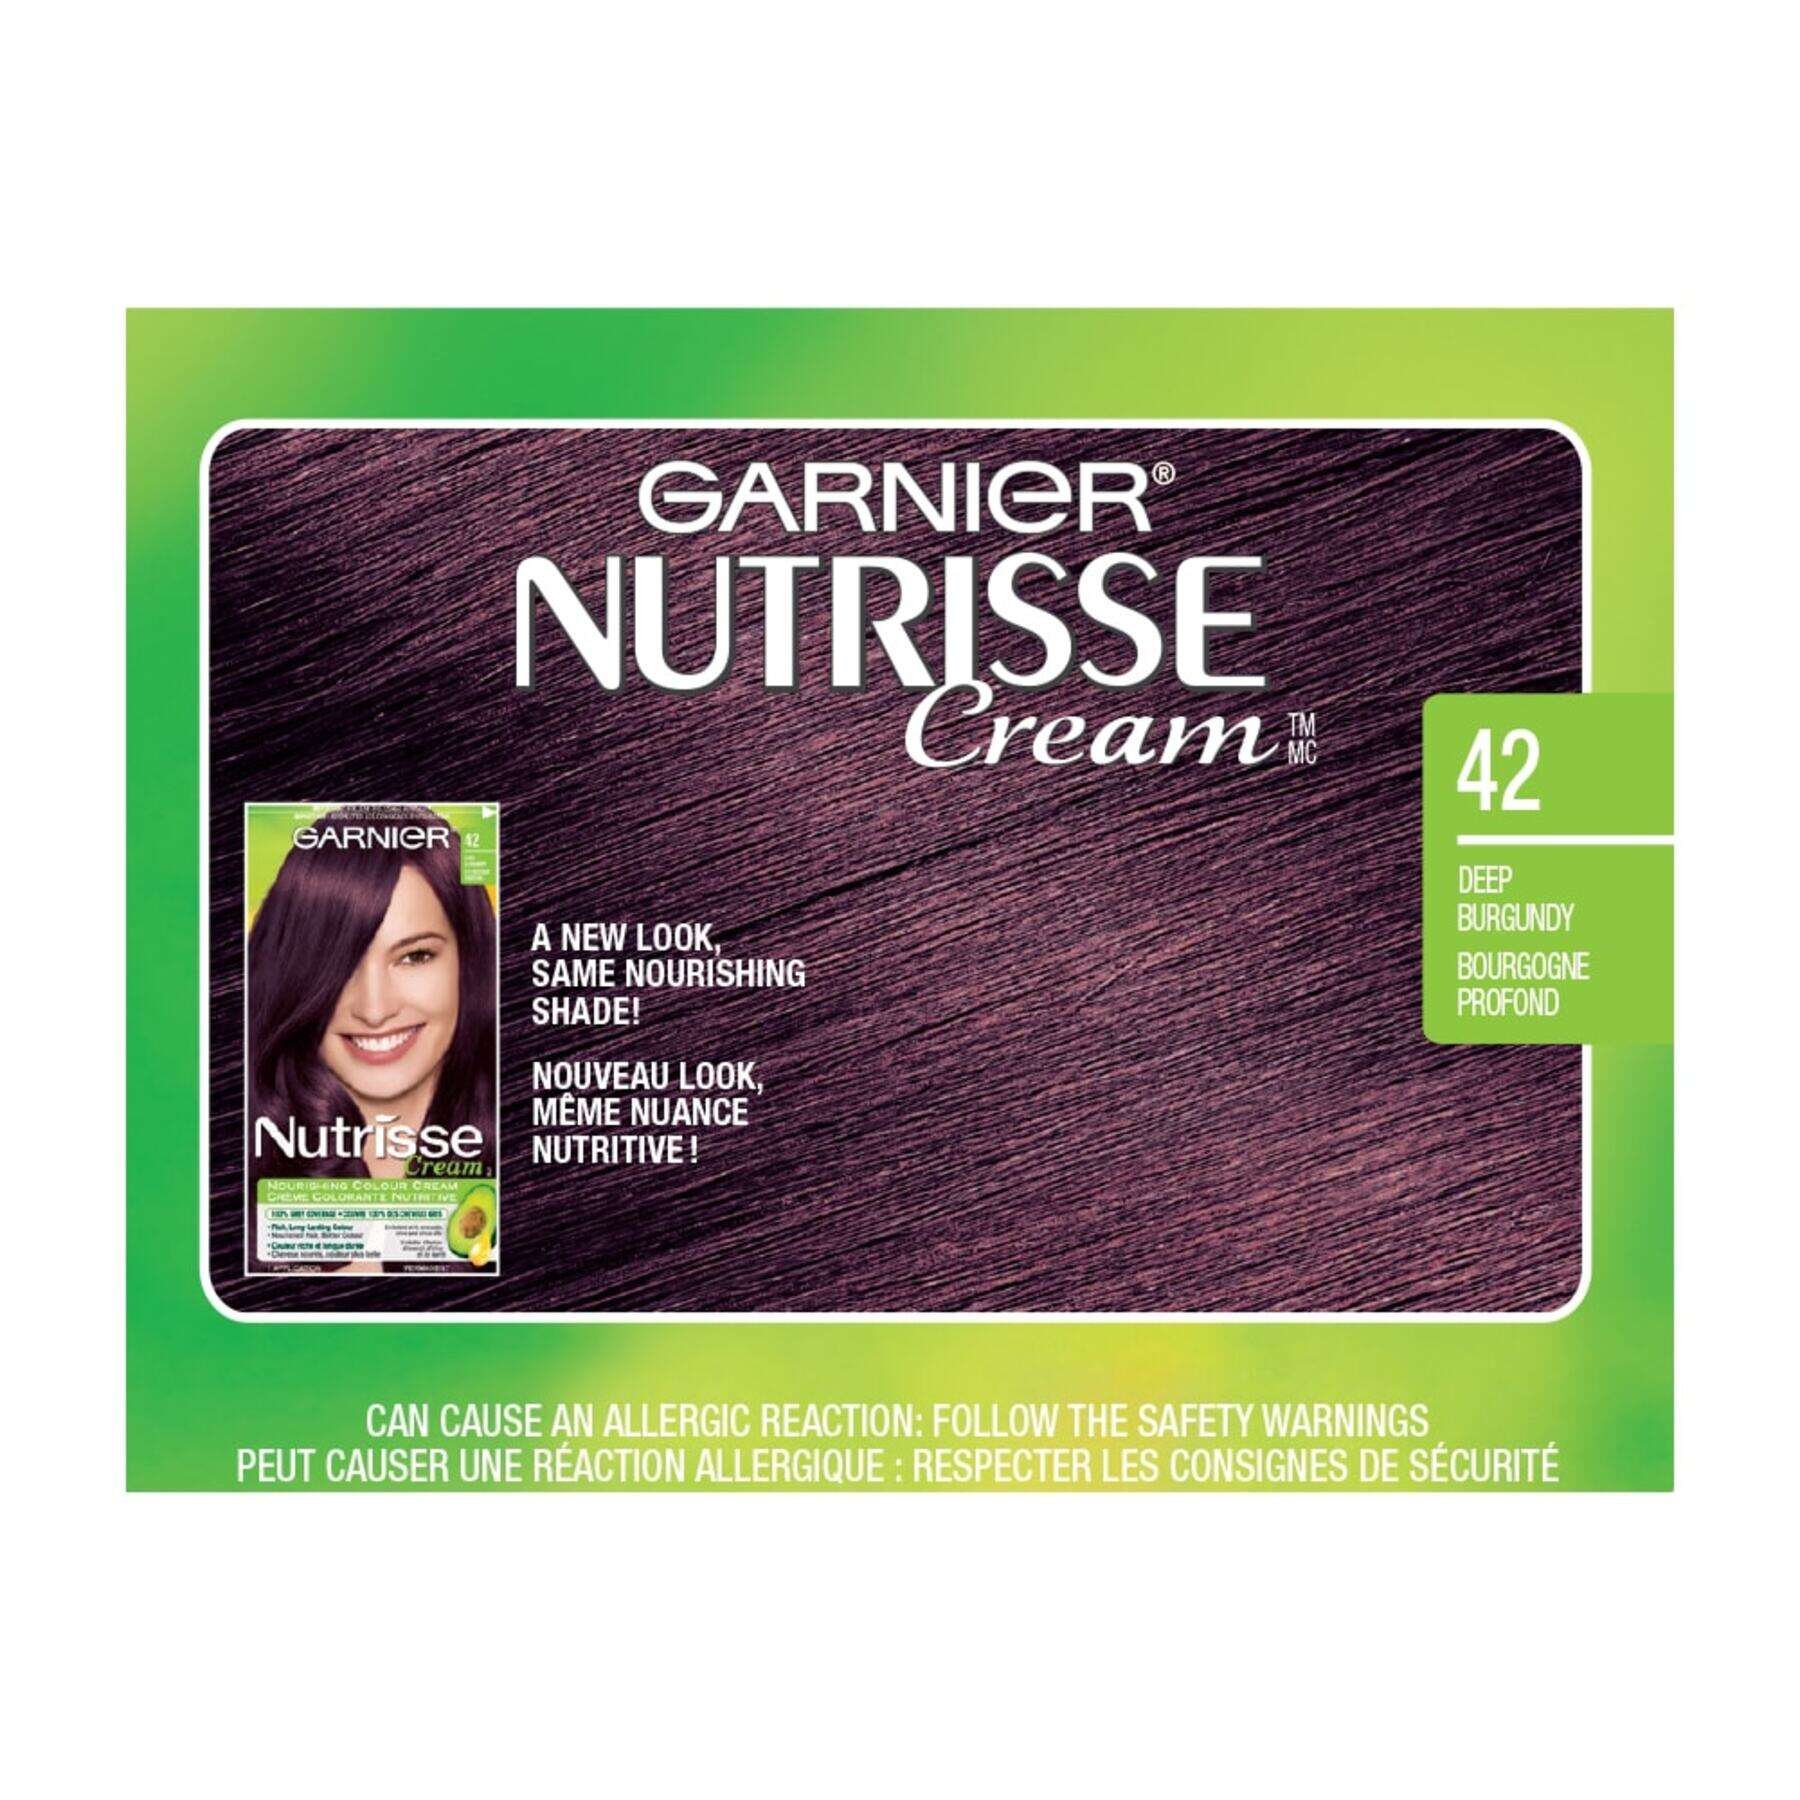 garnier hair dye nutrisse cream 42 deep burgundy 0770103447056 swatch